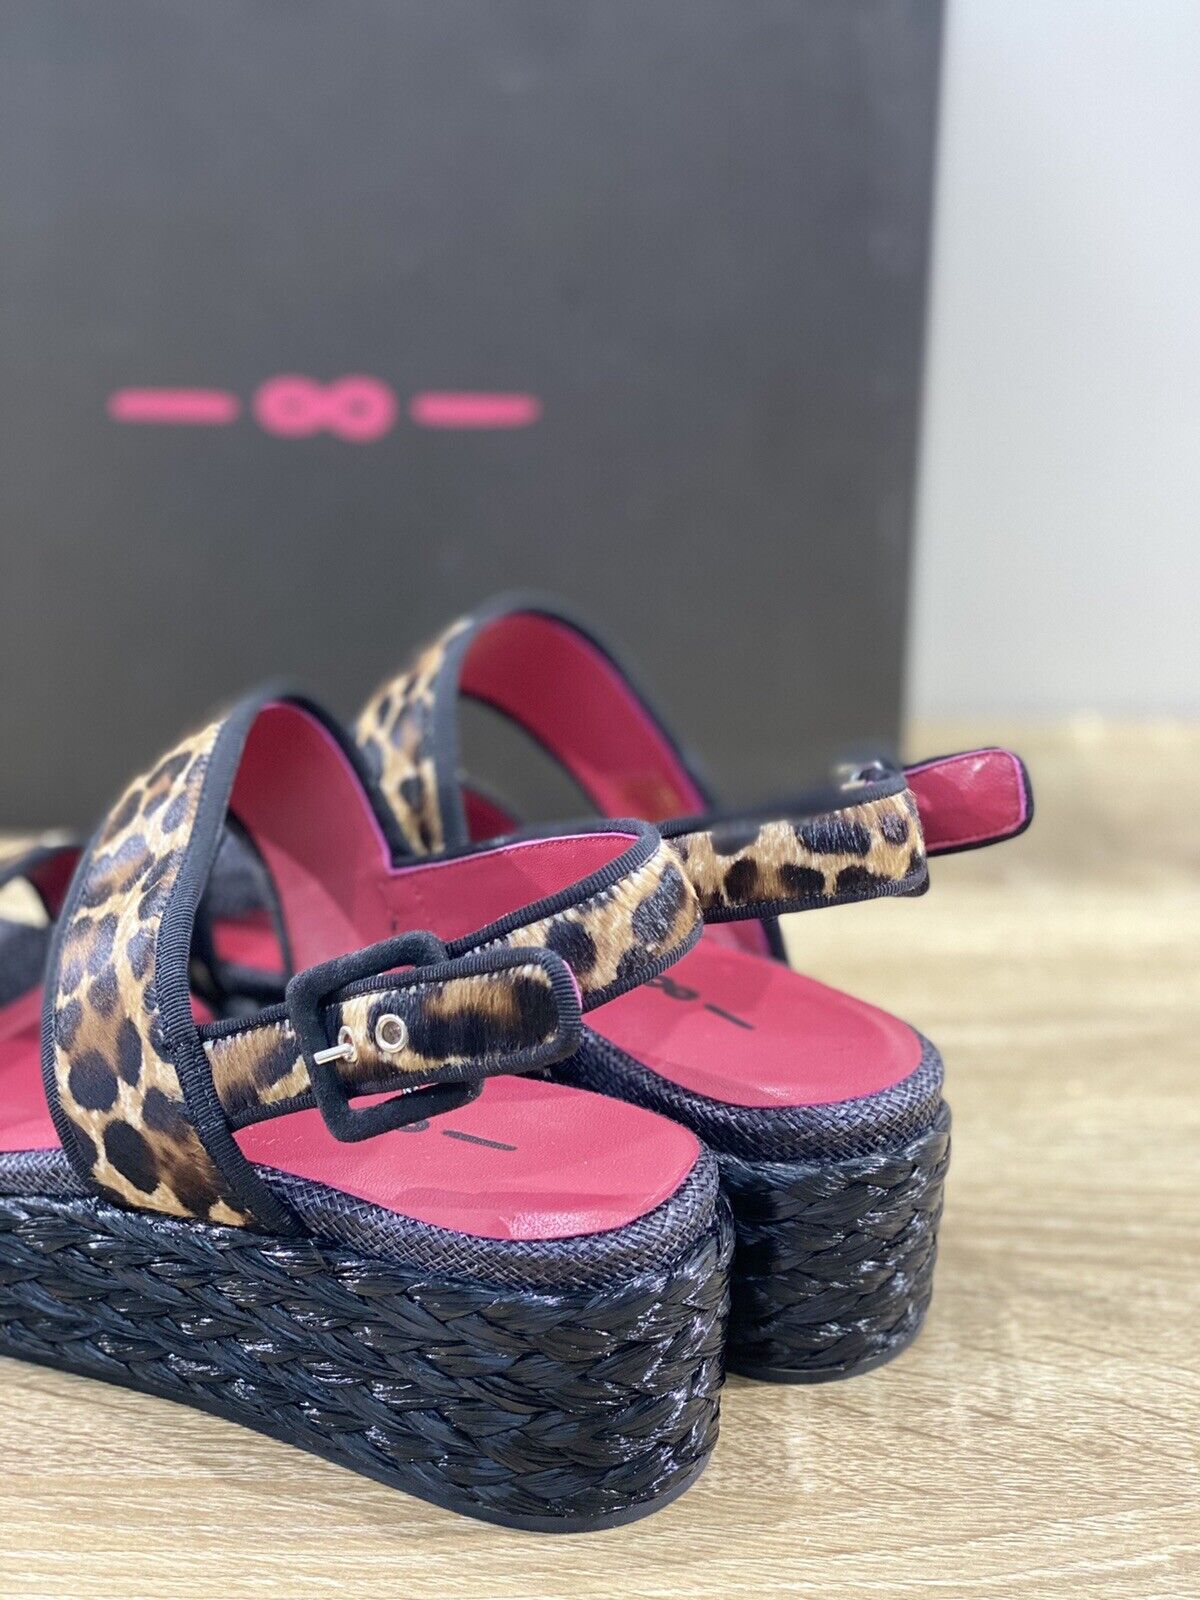 181 Sandalo donna Zeppa Cavallino Leopard  luxury sandal 38